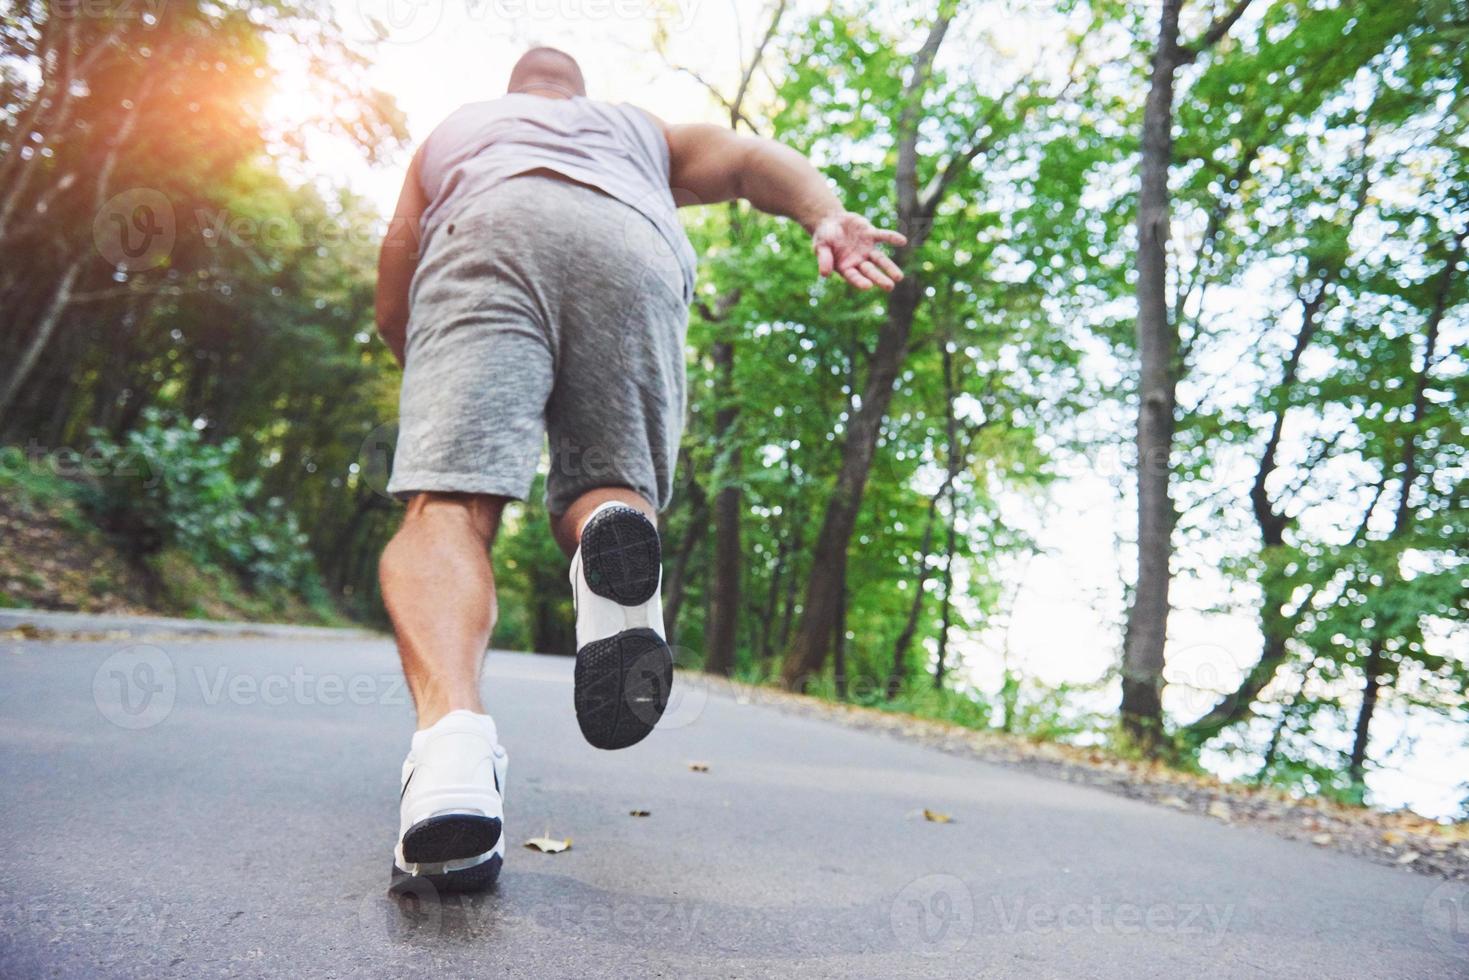 outdoor langlaufen in concept voor sporten, fitness en een gezonde levensstijl. close-up van de voeten van een jonge hardloper die langs de weg in het park loopt foto